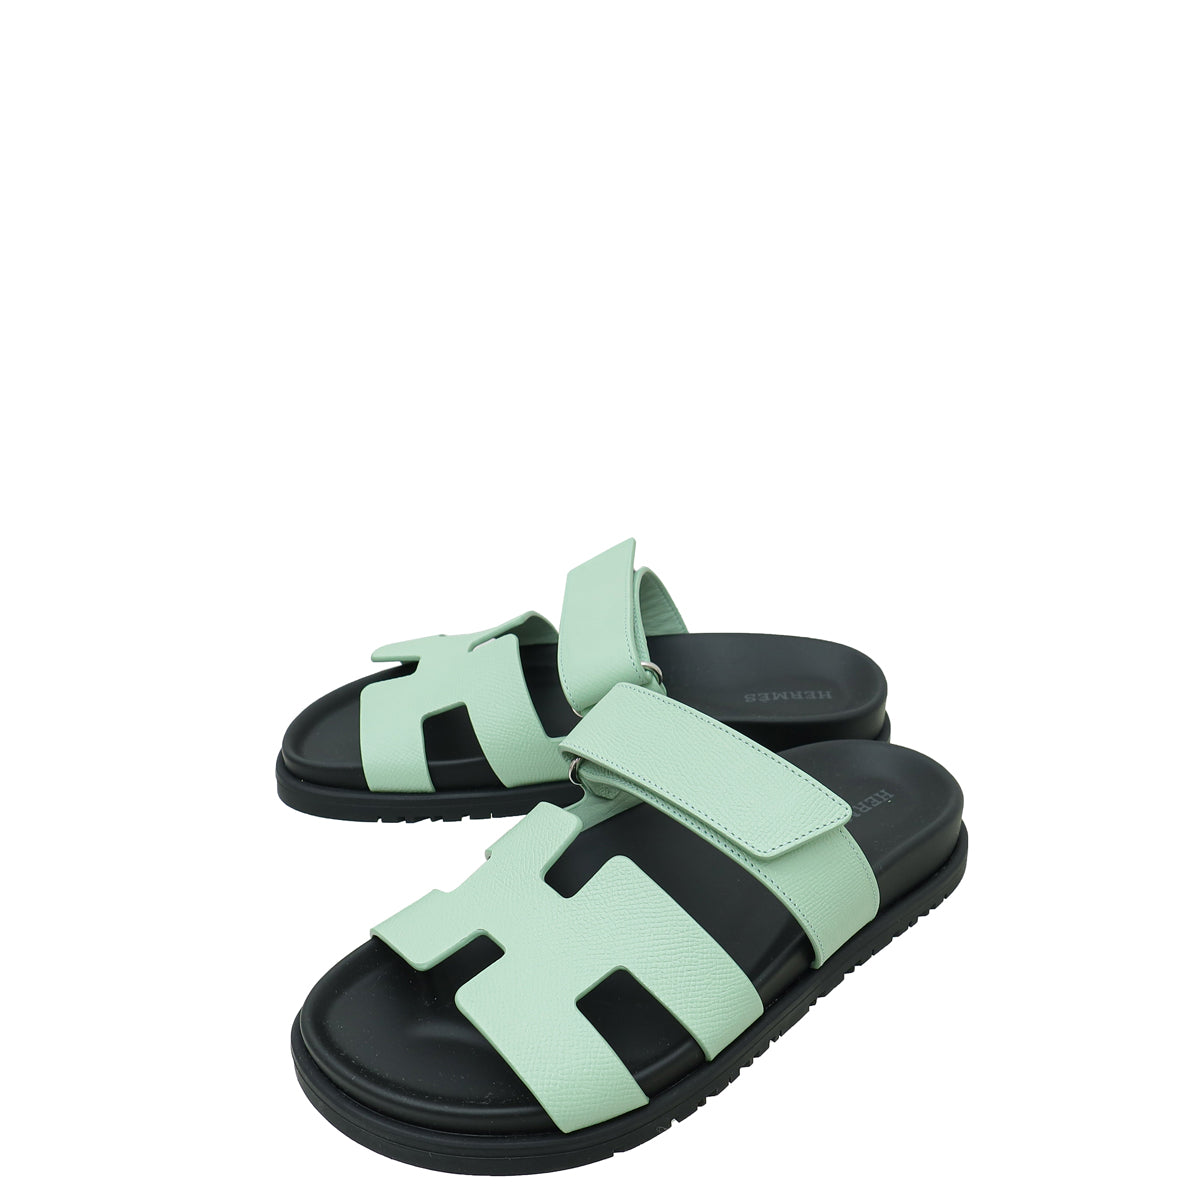 Hermes Vert Jade Chypre Sandals 36